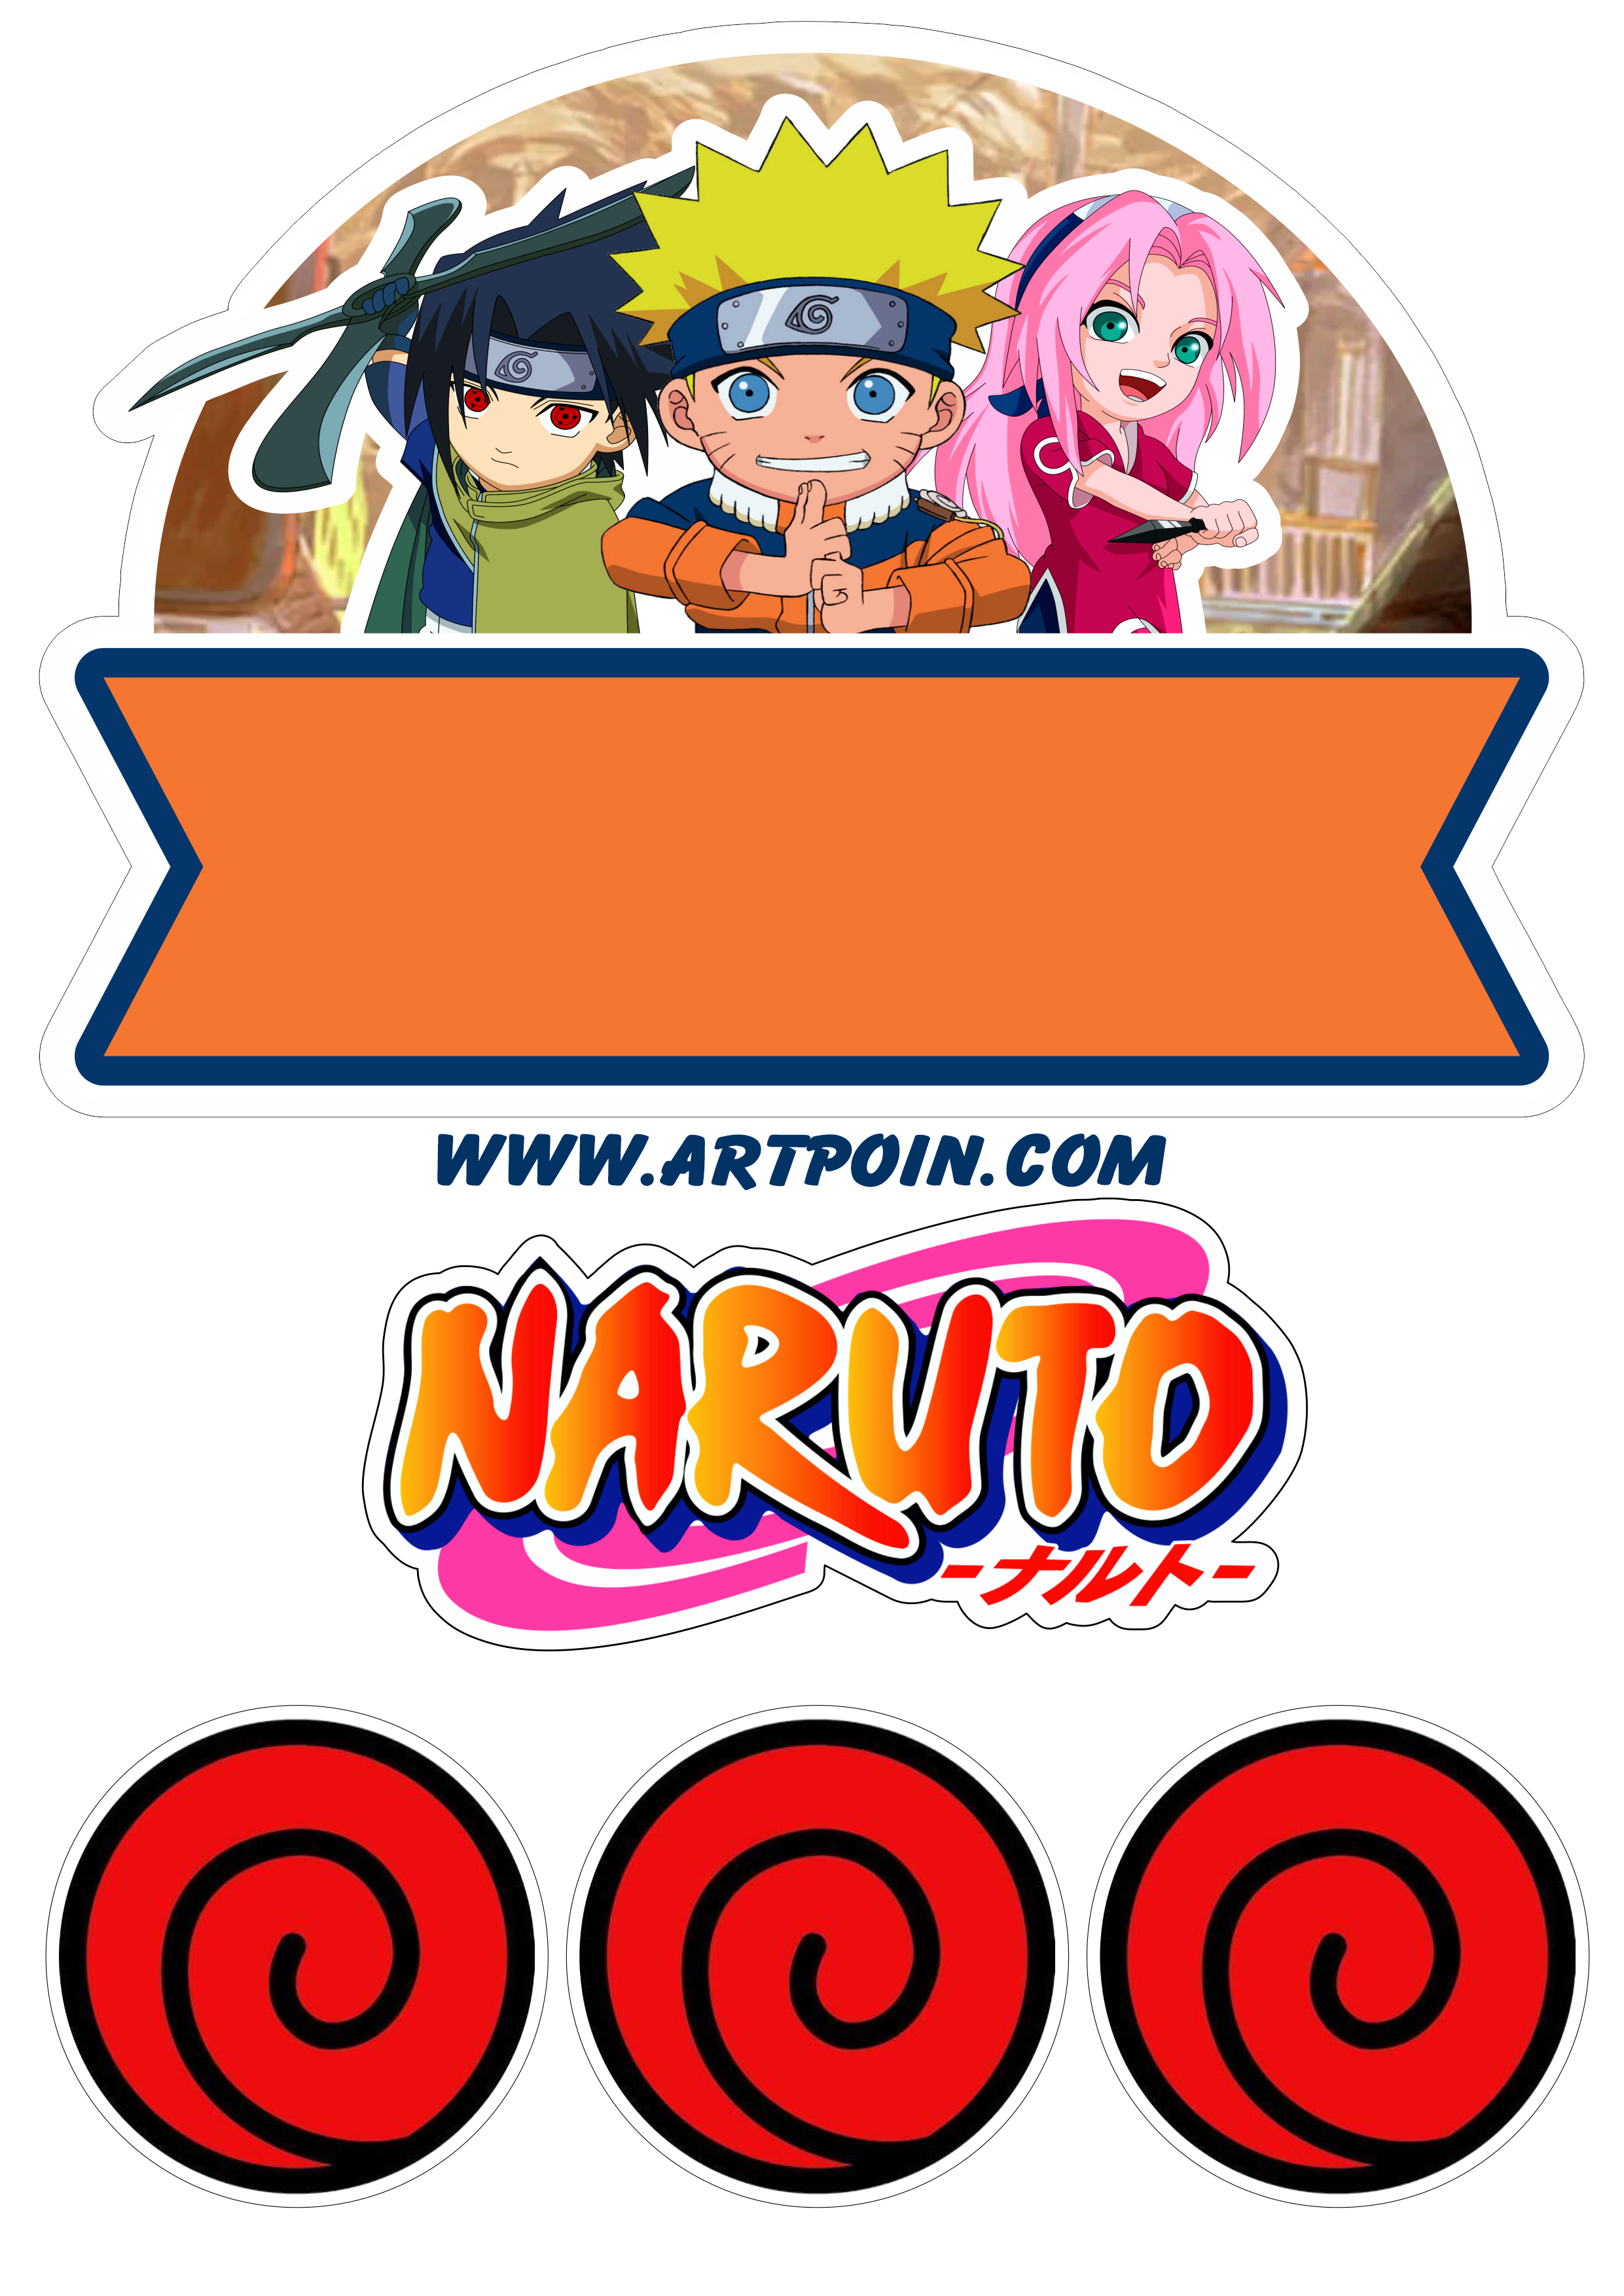 Naruto shippuden modo sábio anime desenho fofinho cute boruto personagem  fictício artigos de papelaria png